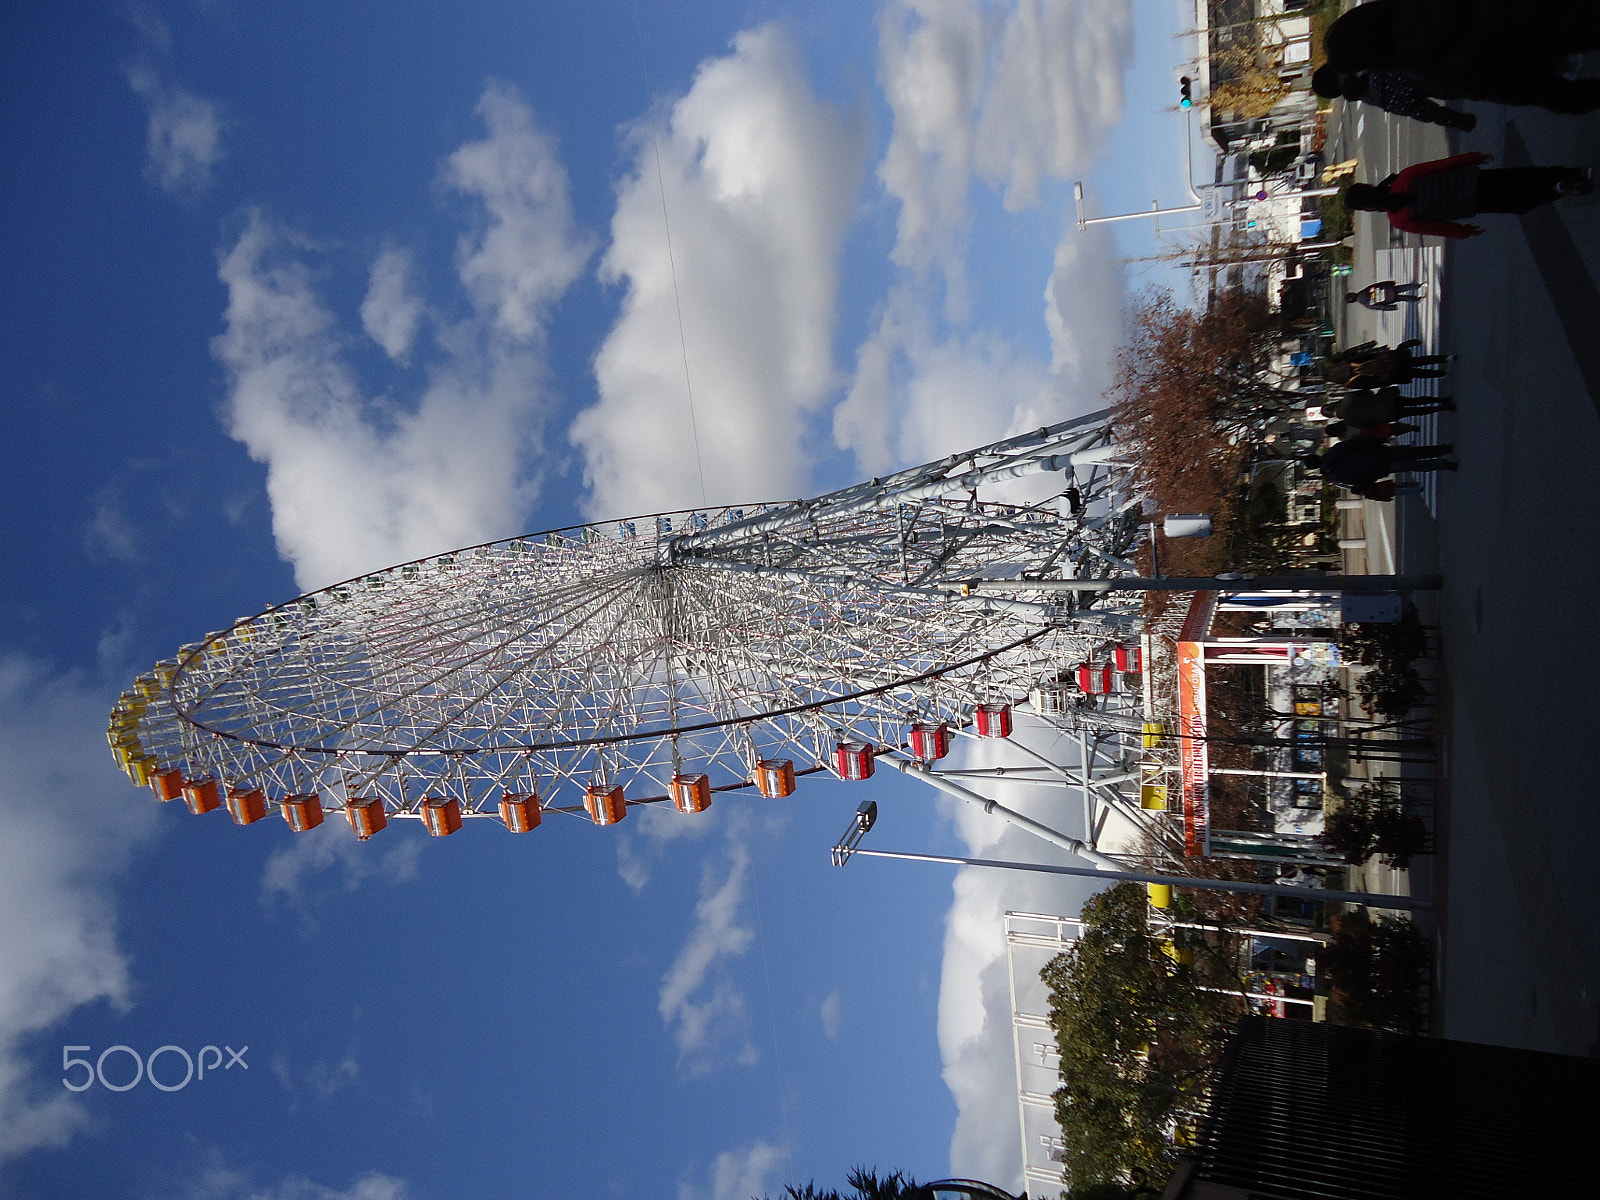 Sony Cyber-shot DSC-W530 sample photo. Ferris wheel photography